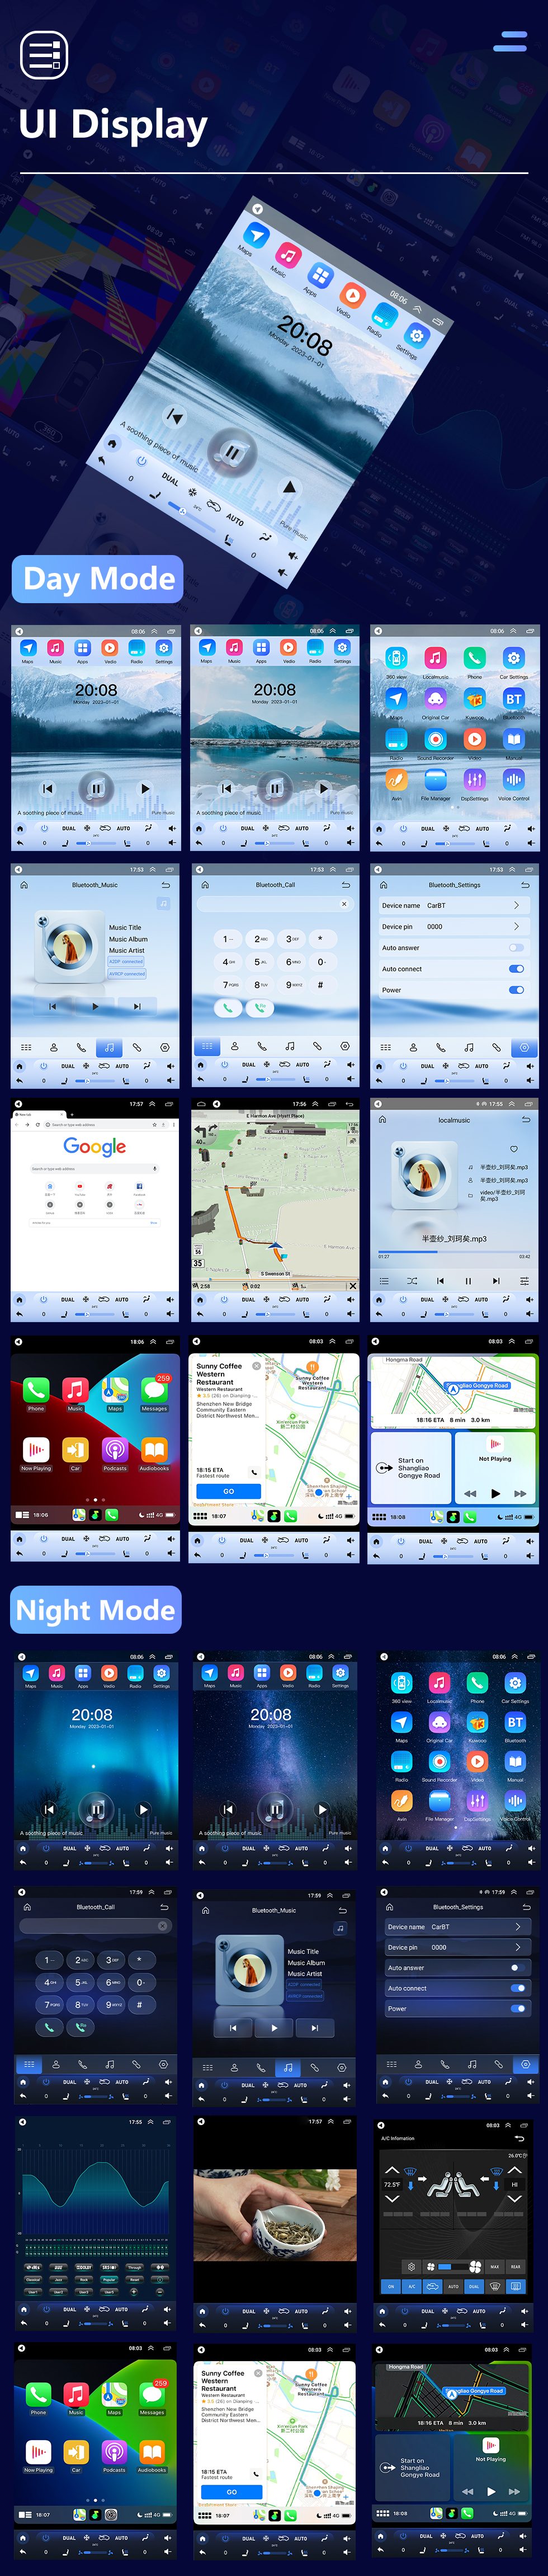 Seicane Android 10.0 9,7-дюймовый для Chery Arrizo 5 2016 года Радио с сенсорным экраном HD Система GPS-навигации Поддержка Bluetooth Carplay TPMS